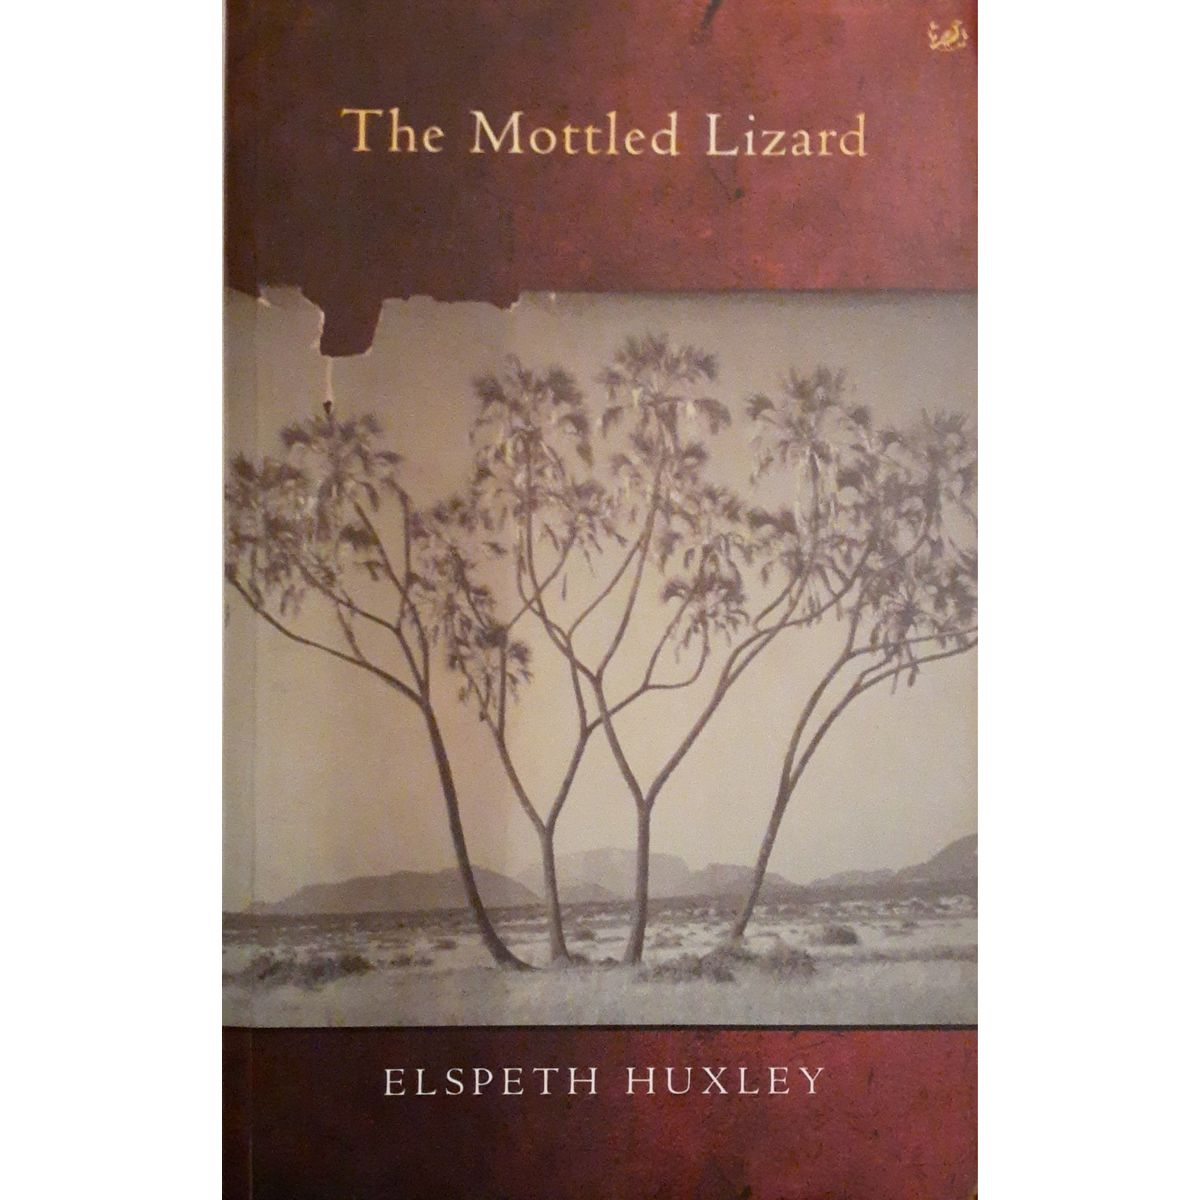 ISBN: 9780712674553 / 0712674551 - The Mottled Lizard by Elspeth Huxley [1999]